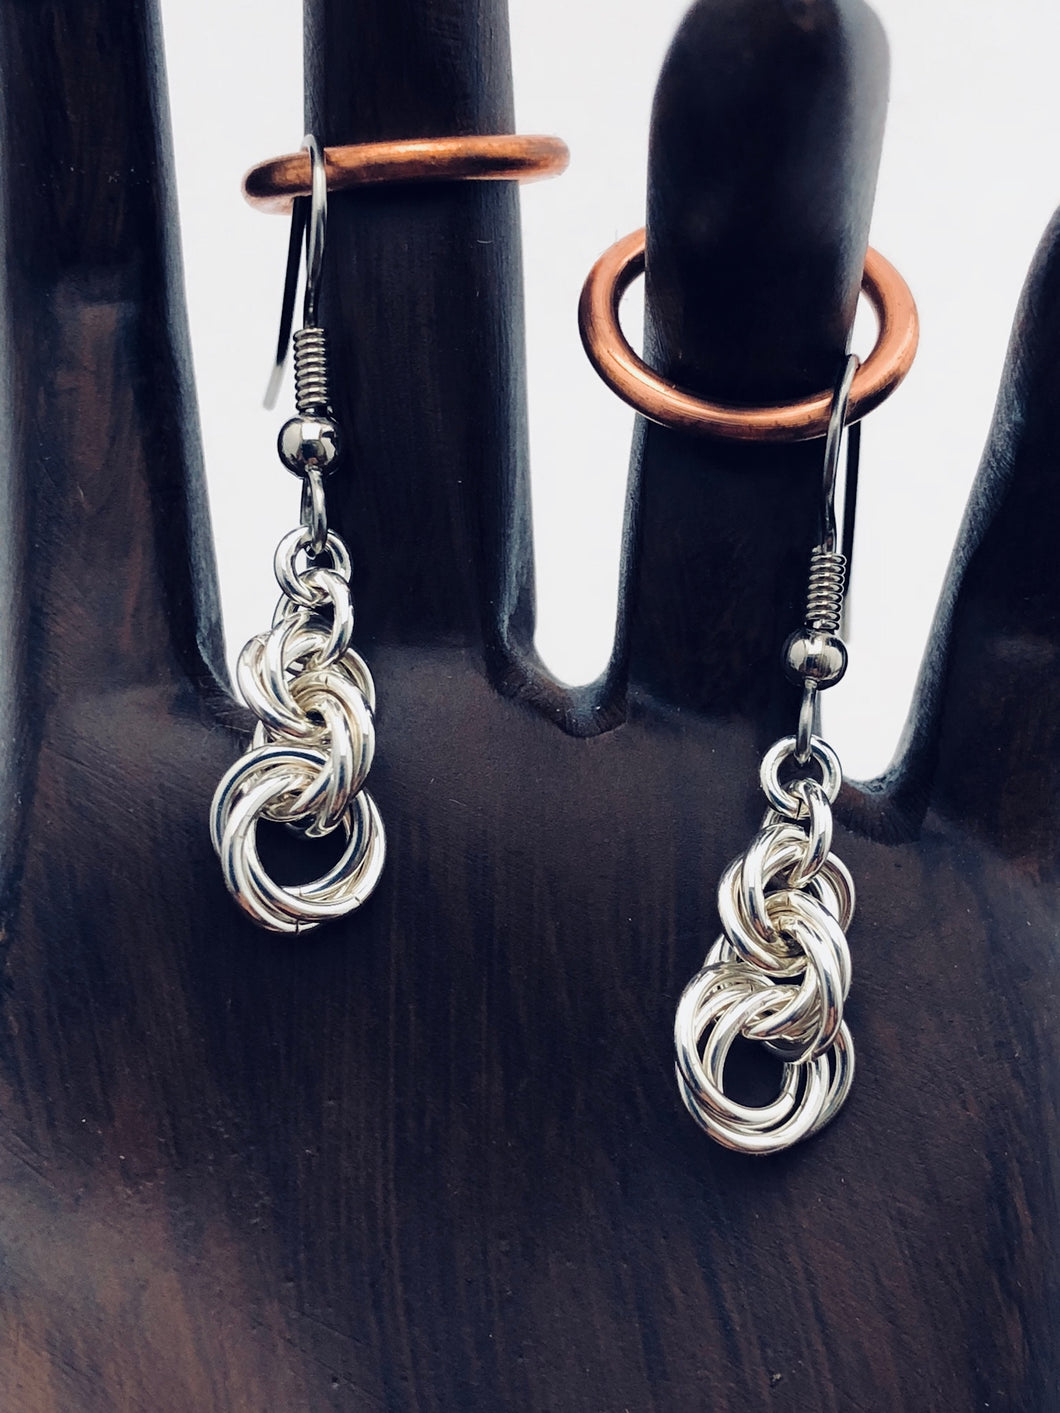 seaXwolf fine handmade jewelry solid sterling silver chain earrings entitled 